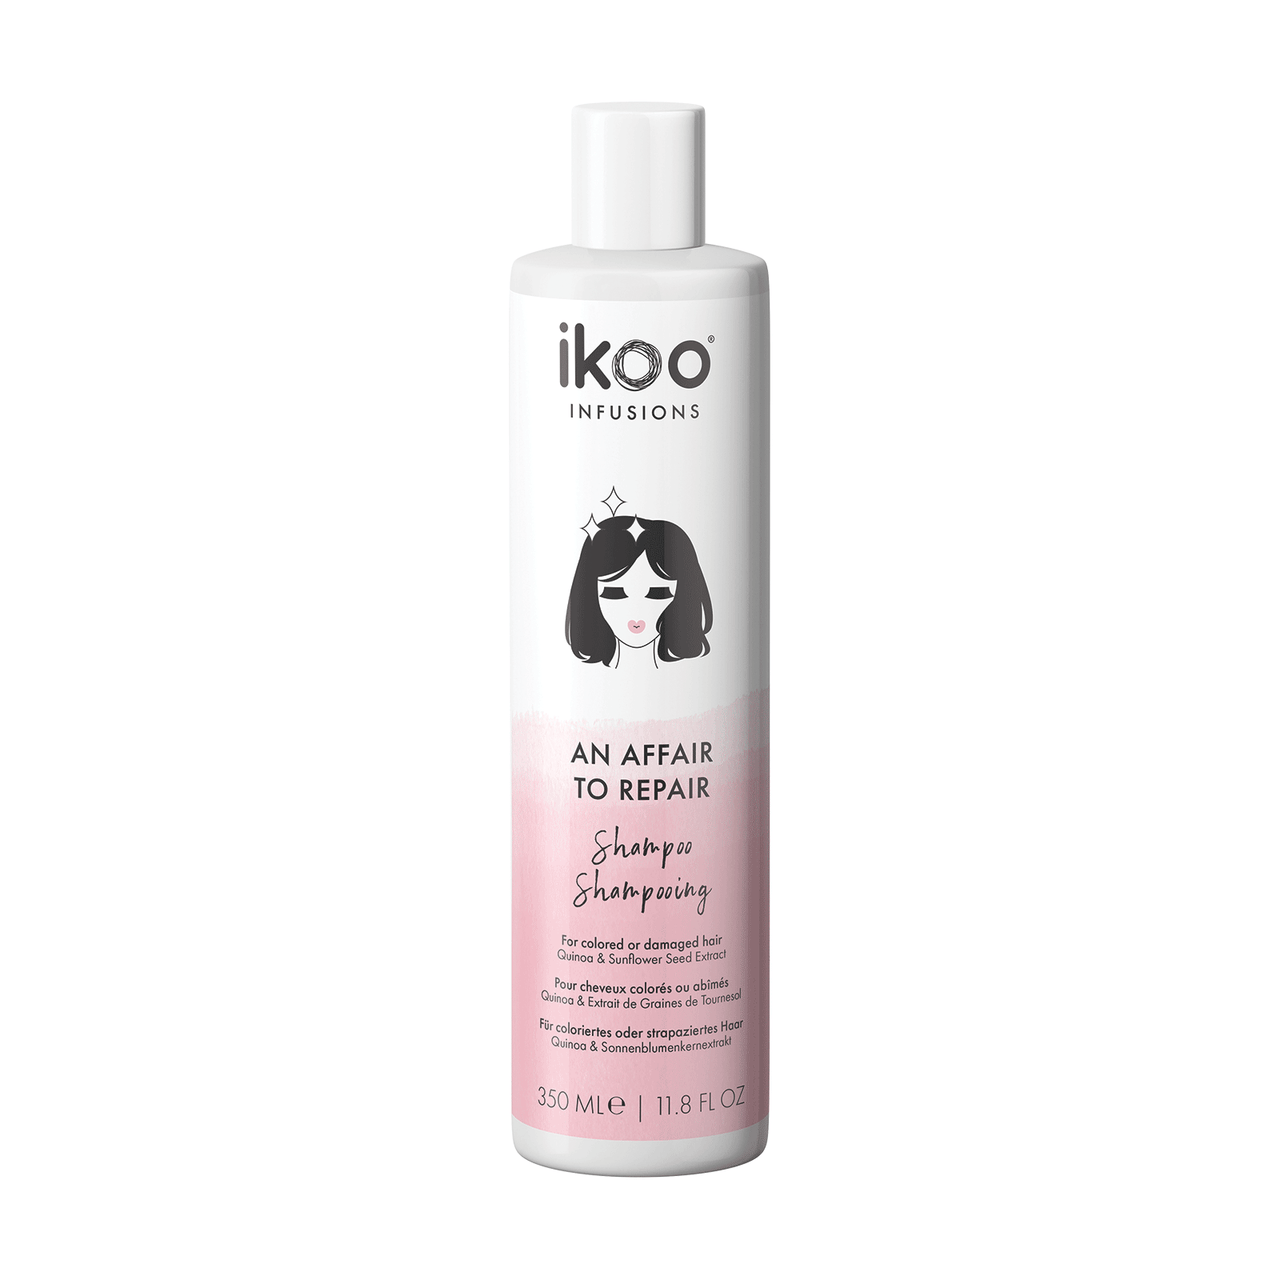 ikoo An Affair To Repair Shampoo 11.8 fl oz